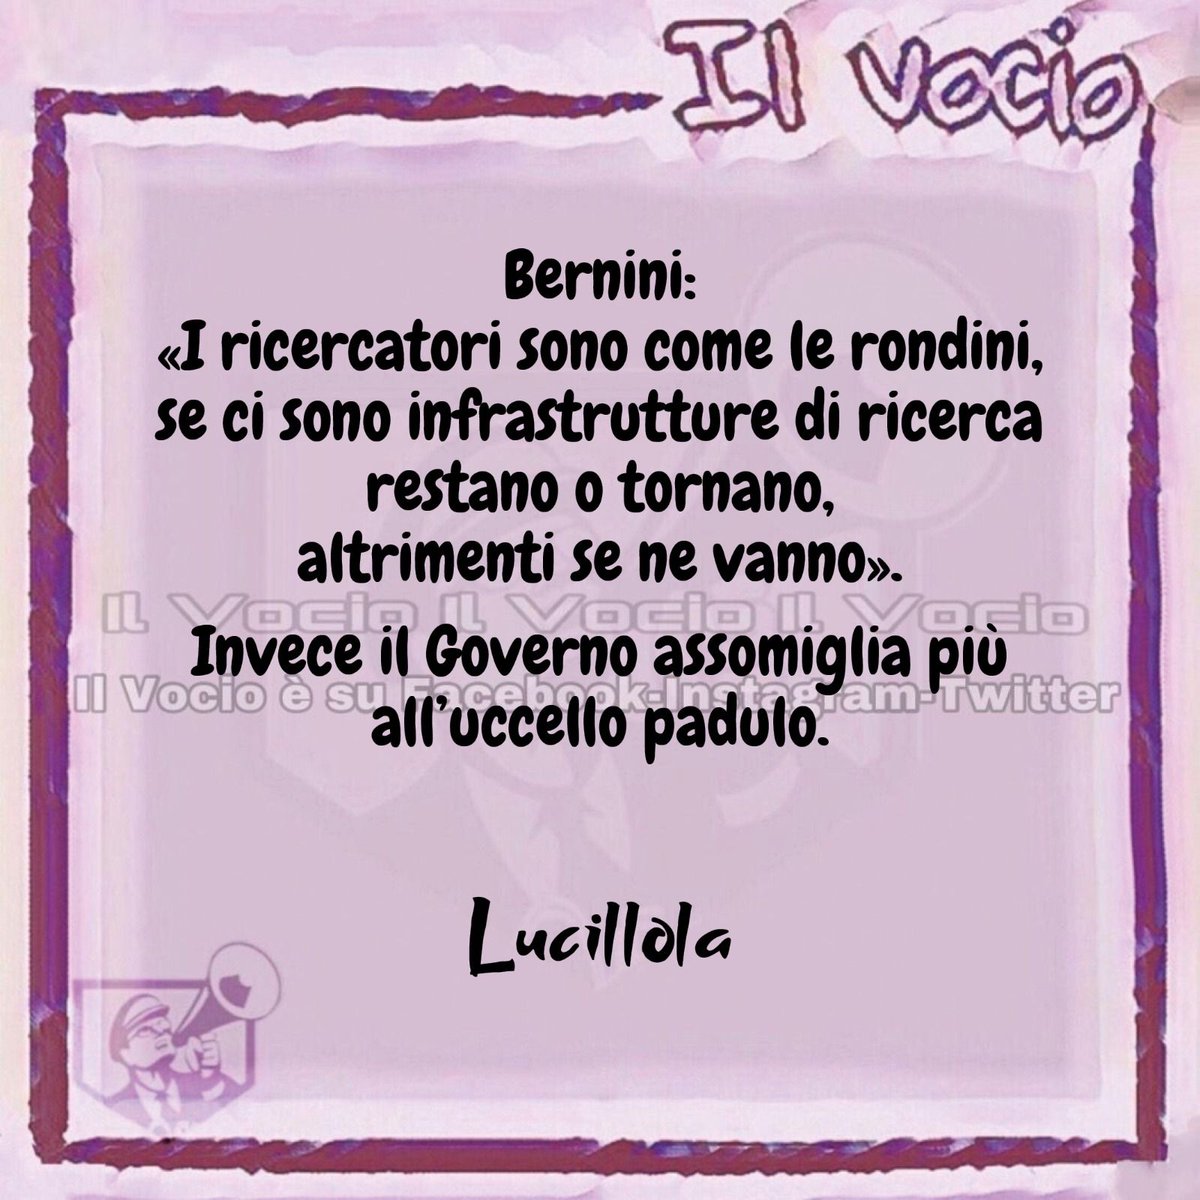 Lucillola @LucillaMasini #30maggio #ilvocio #Bernini #università #giovani #scienza #ricerca #Meloni #scuola #MeloniTornaACasa #GovernoMeloni